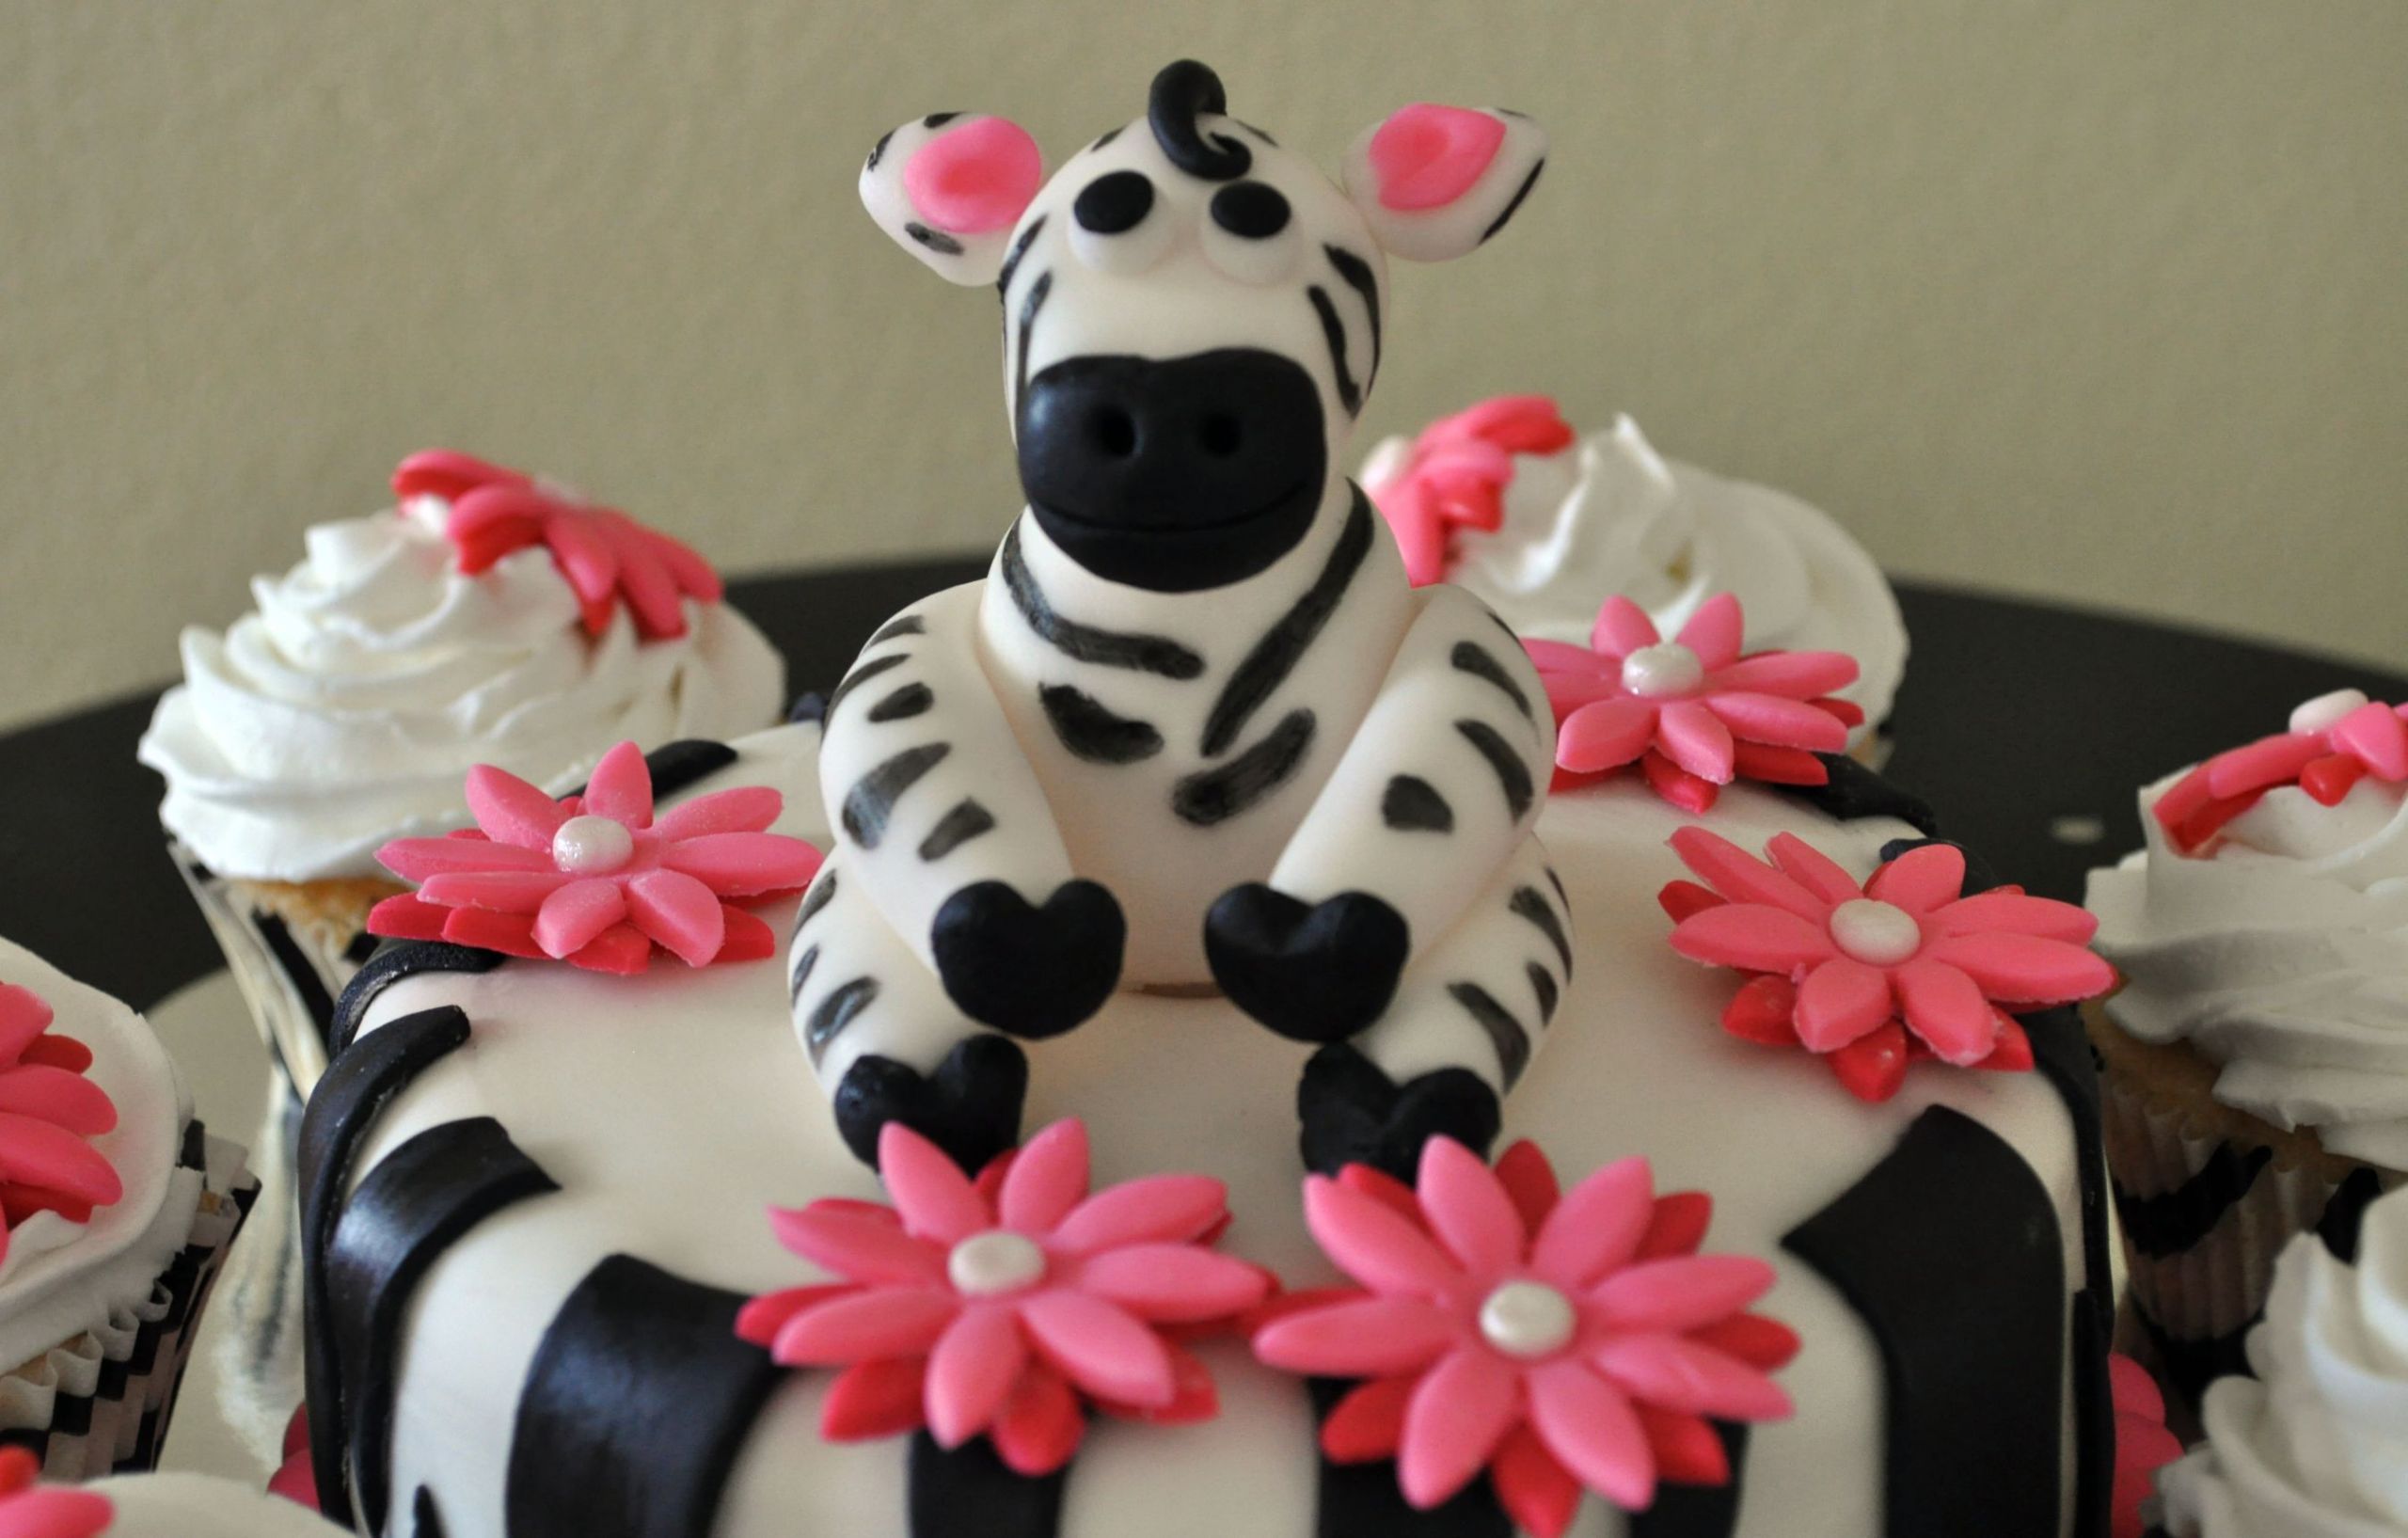 Zebra Birthday Cake
 Zebra Cakes – Decoration Ideas